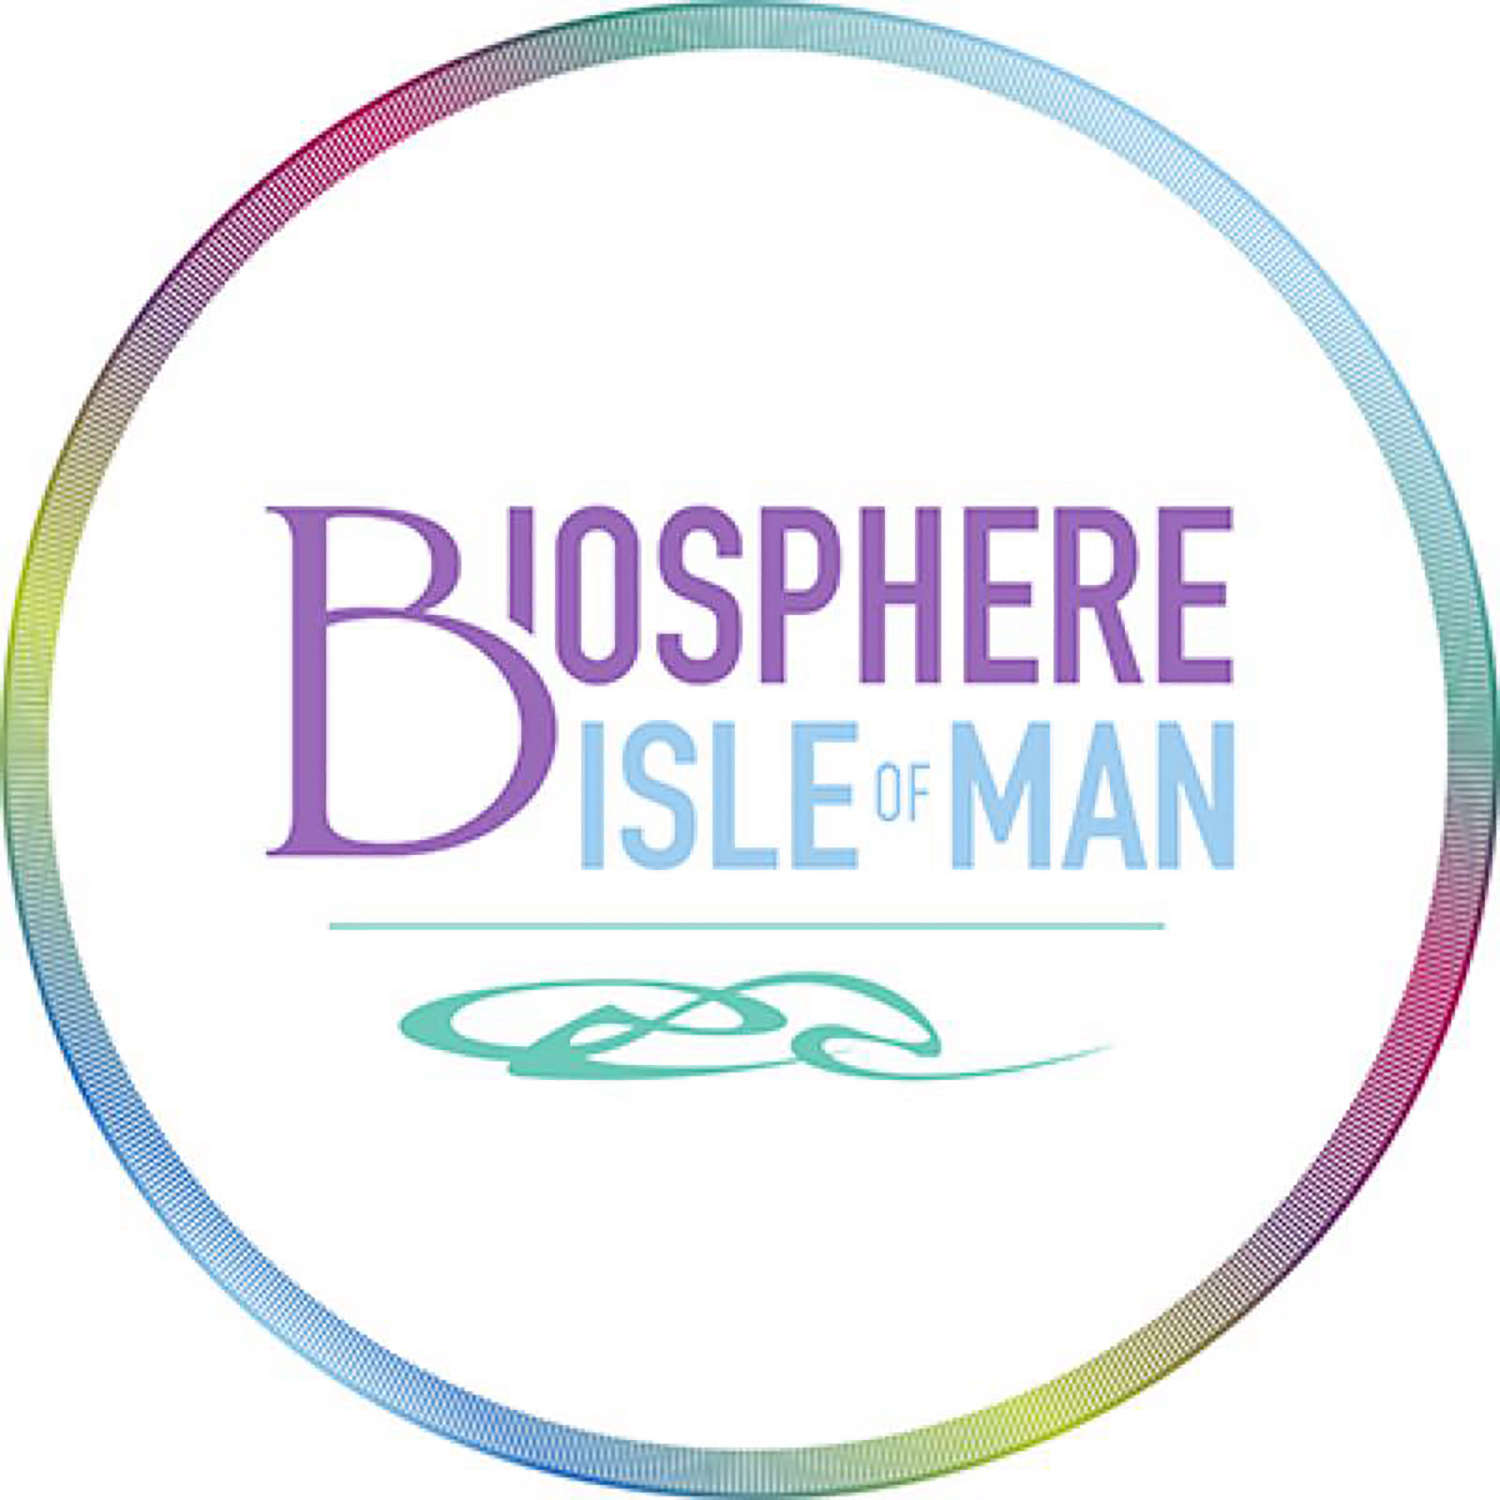 Biosphere Isle of Man